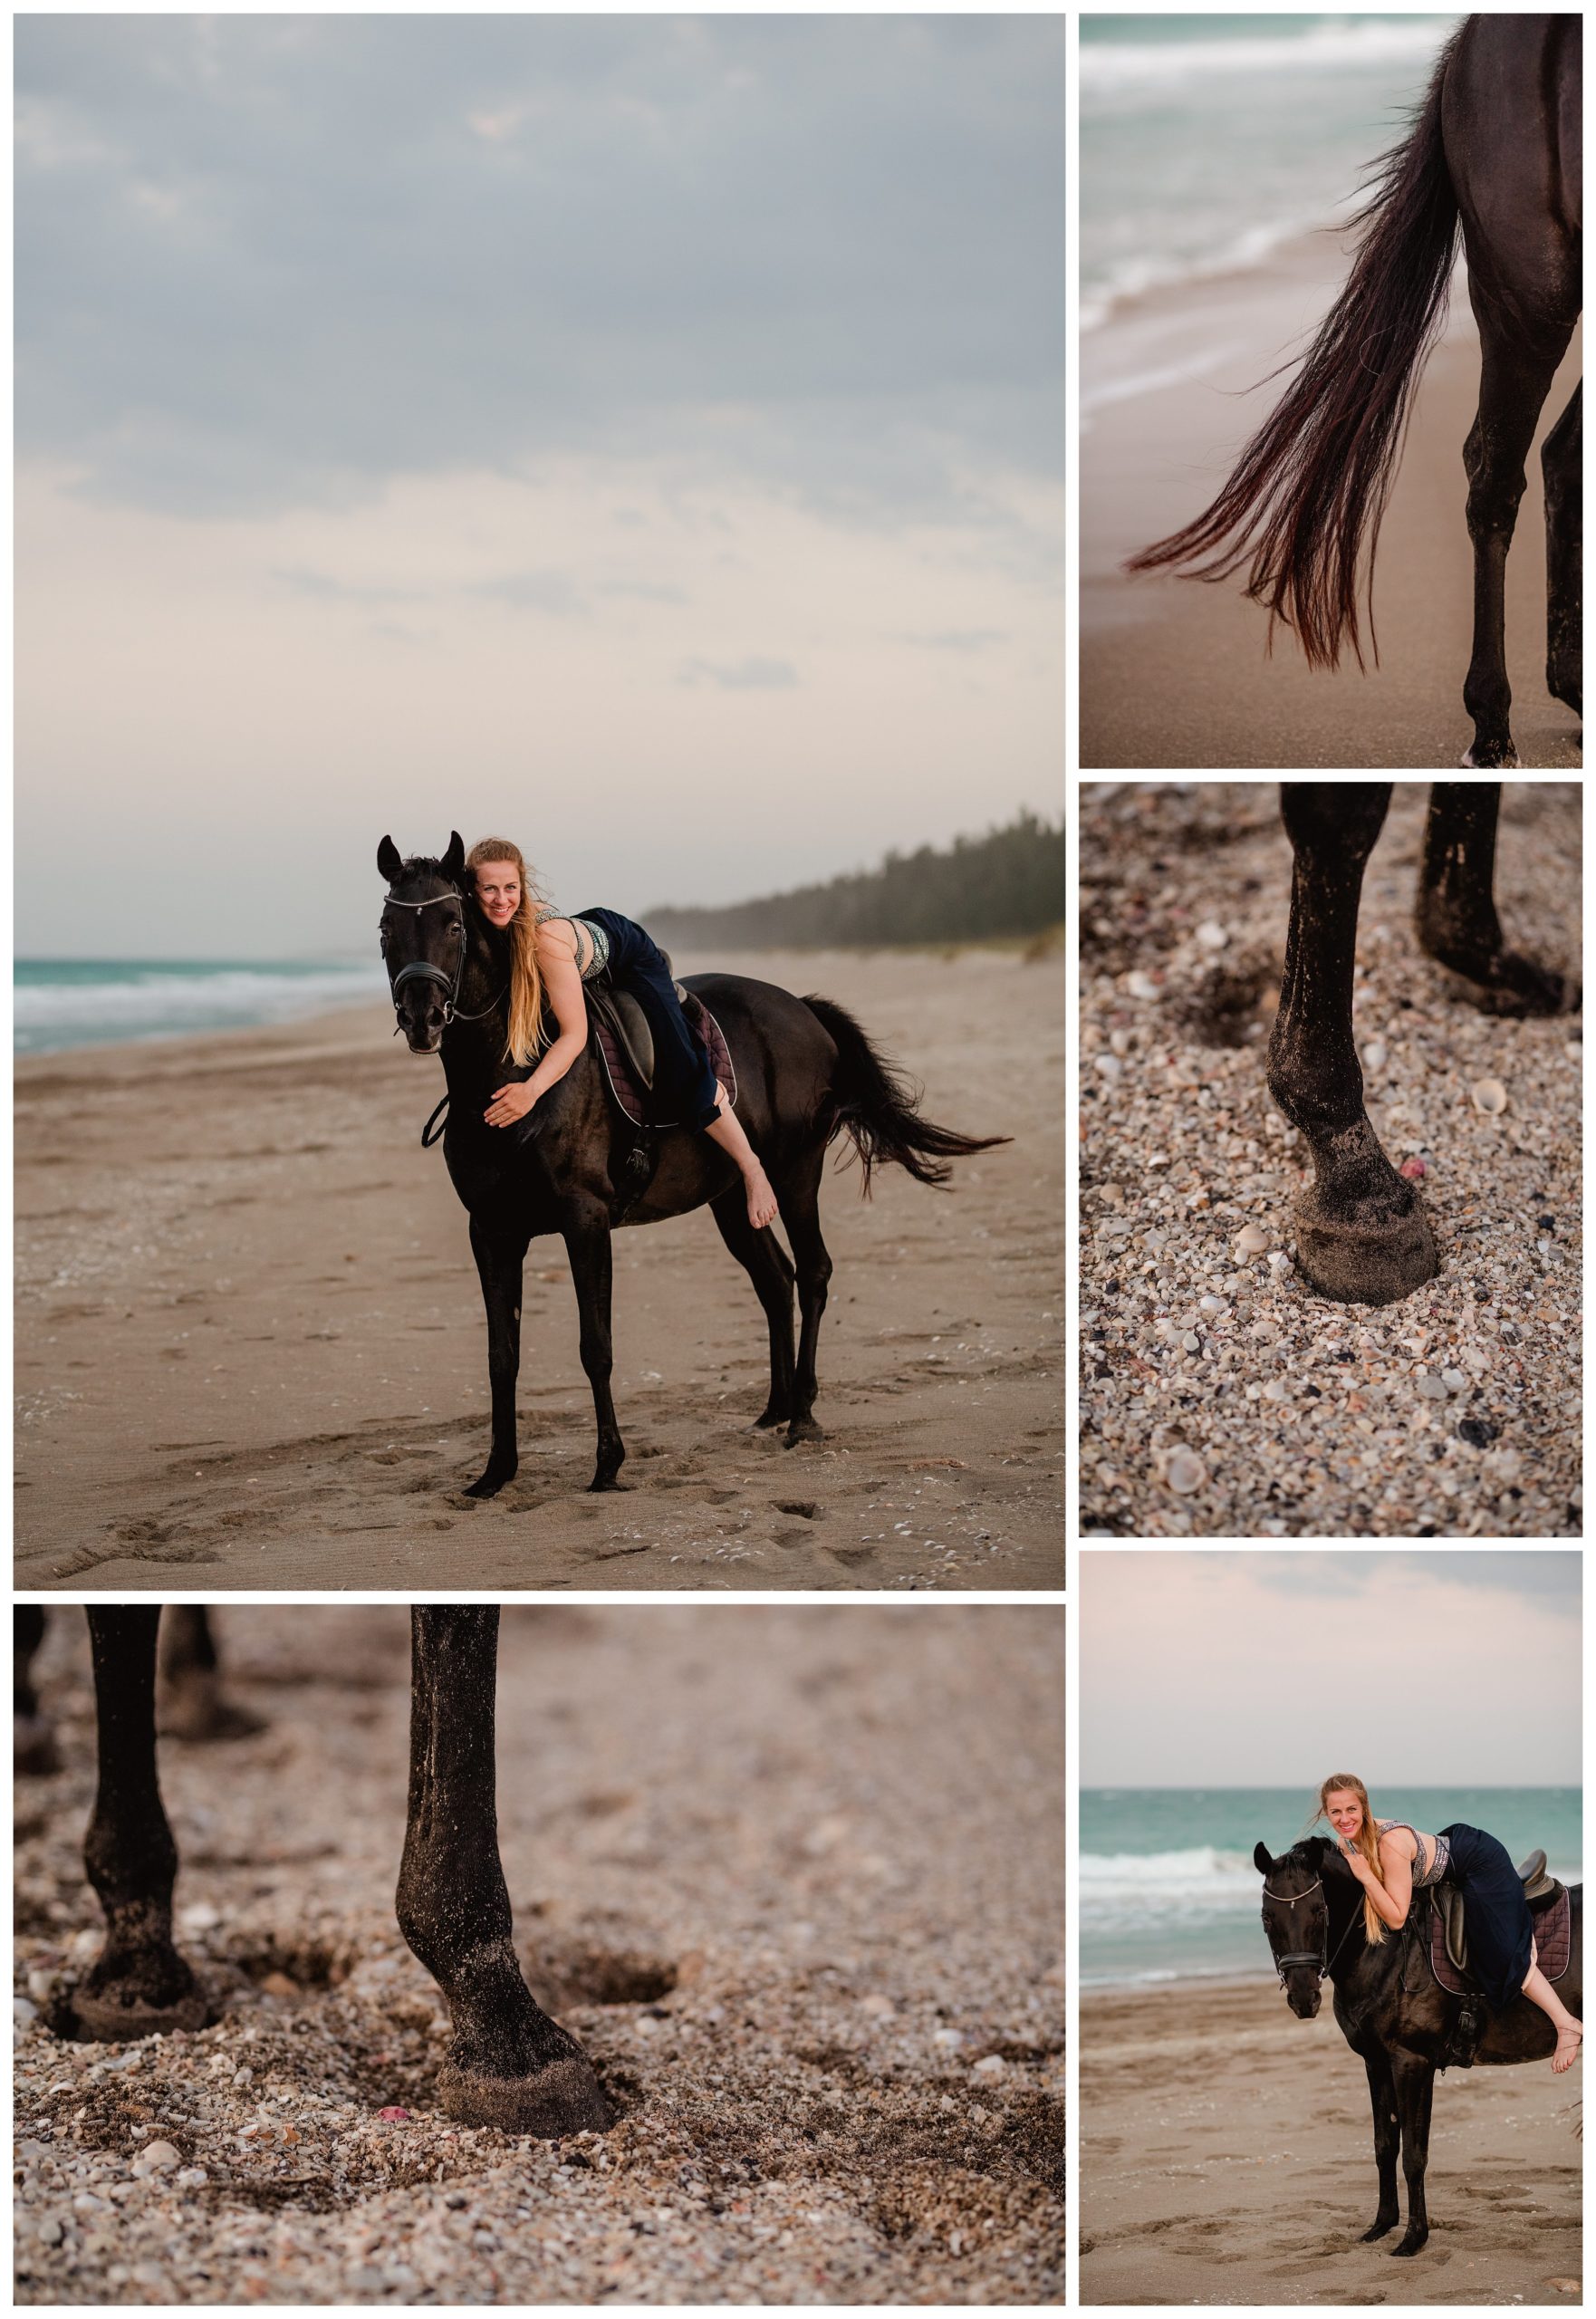 Horse riding on the beach on Florida's east coast